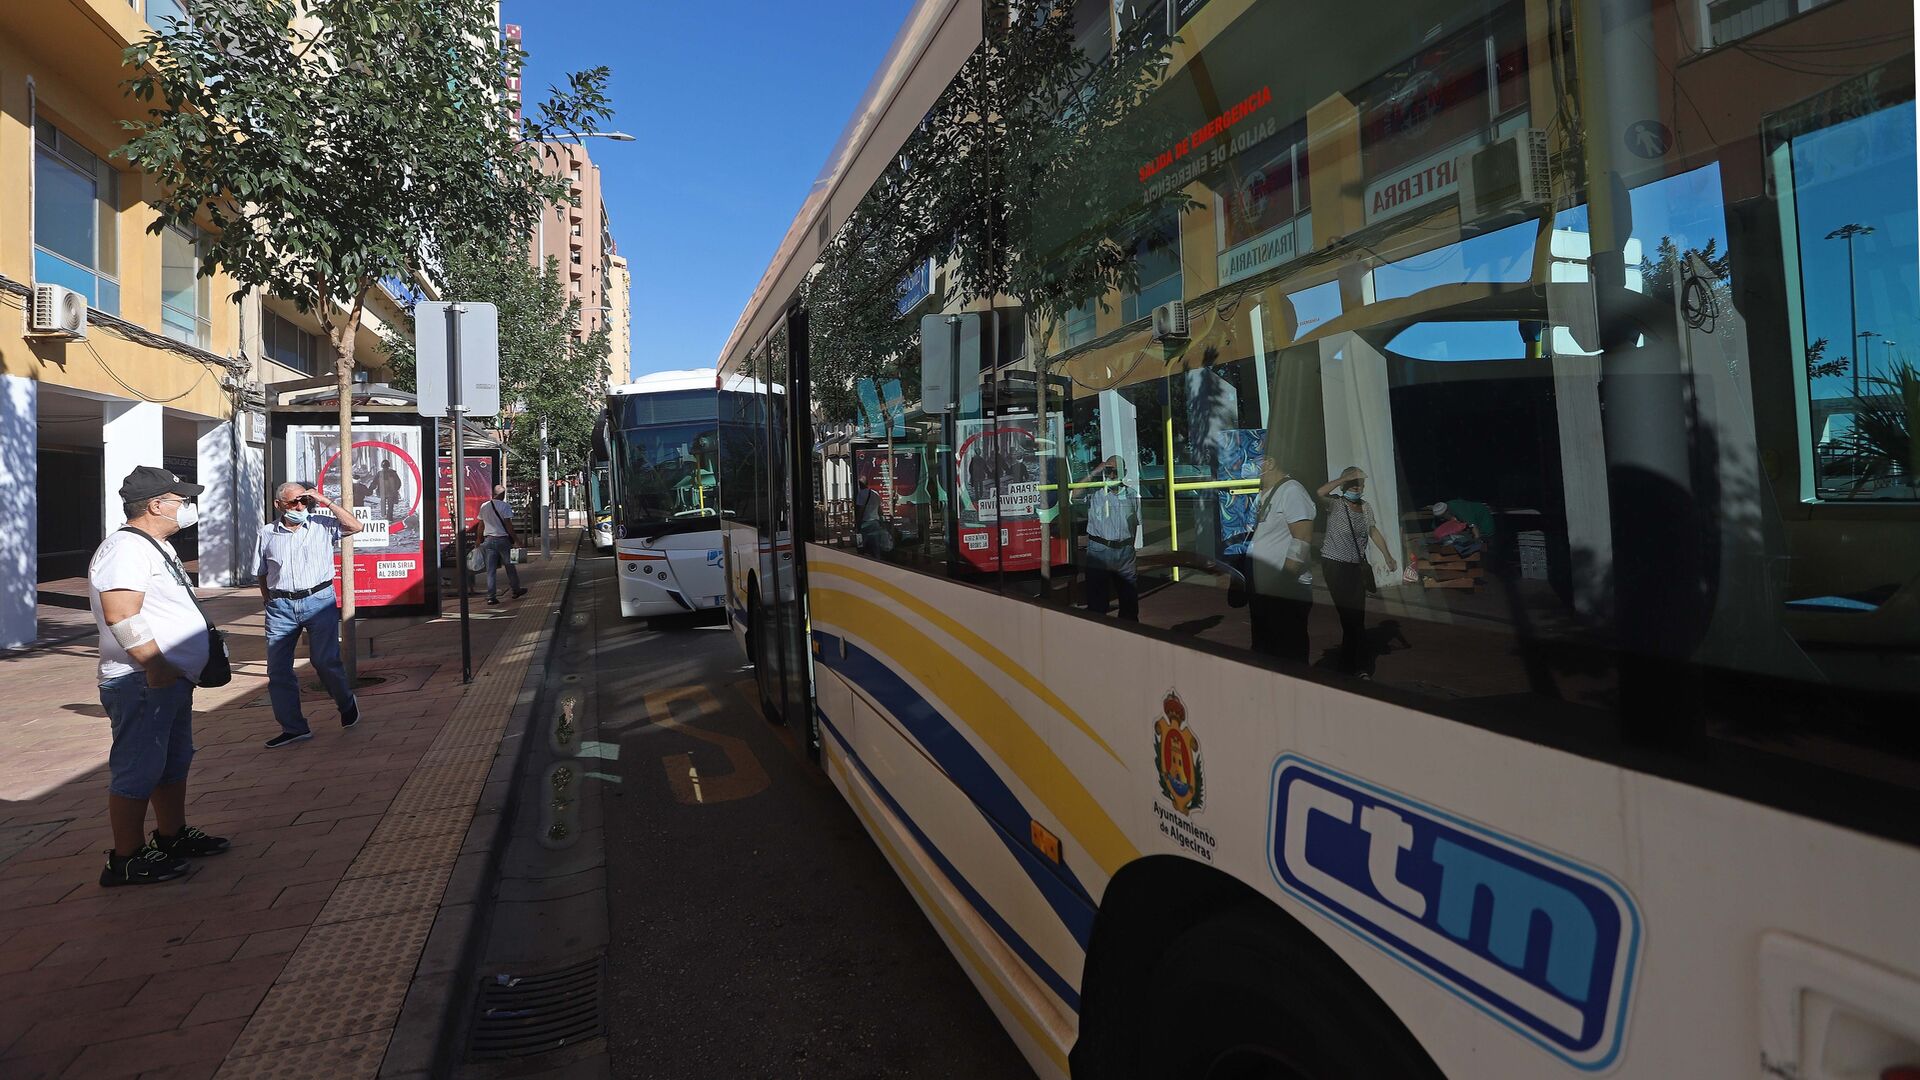 Fotos de la huelga de autobuses urbanos en Algeciras